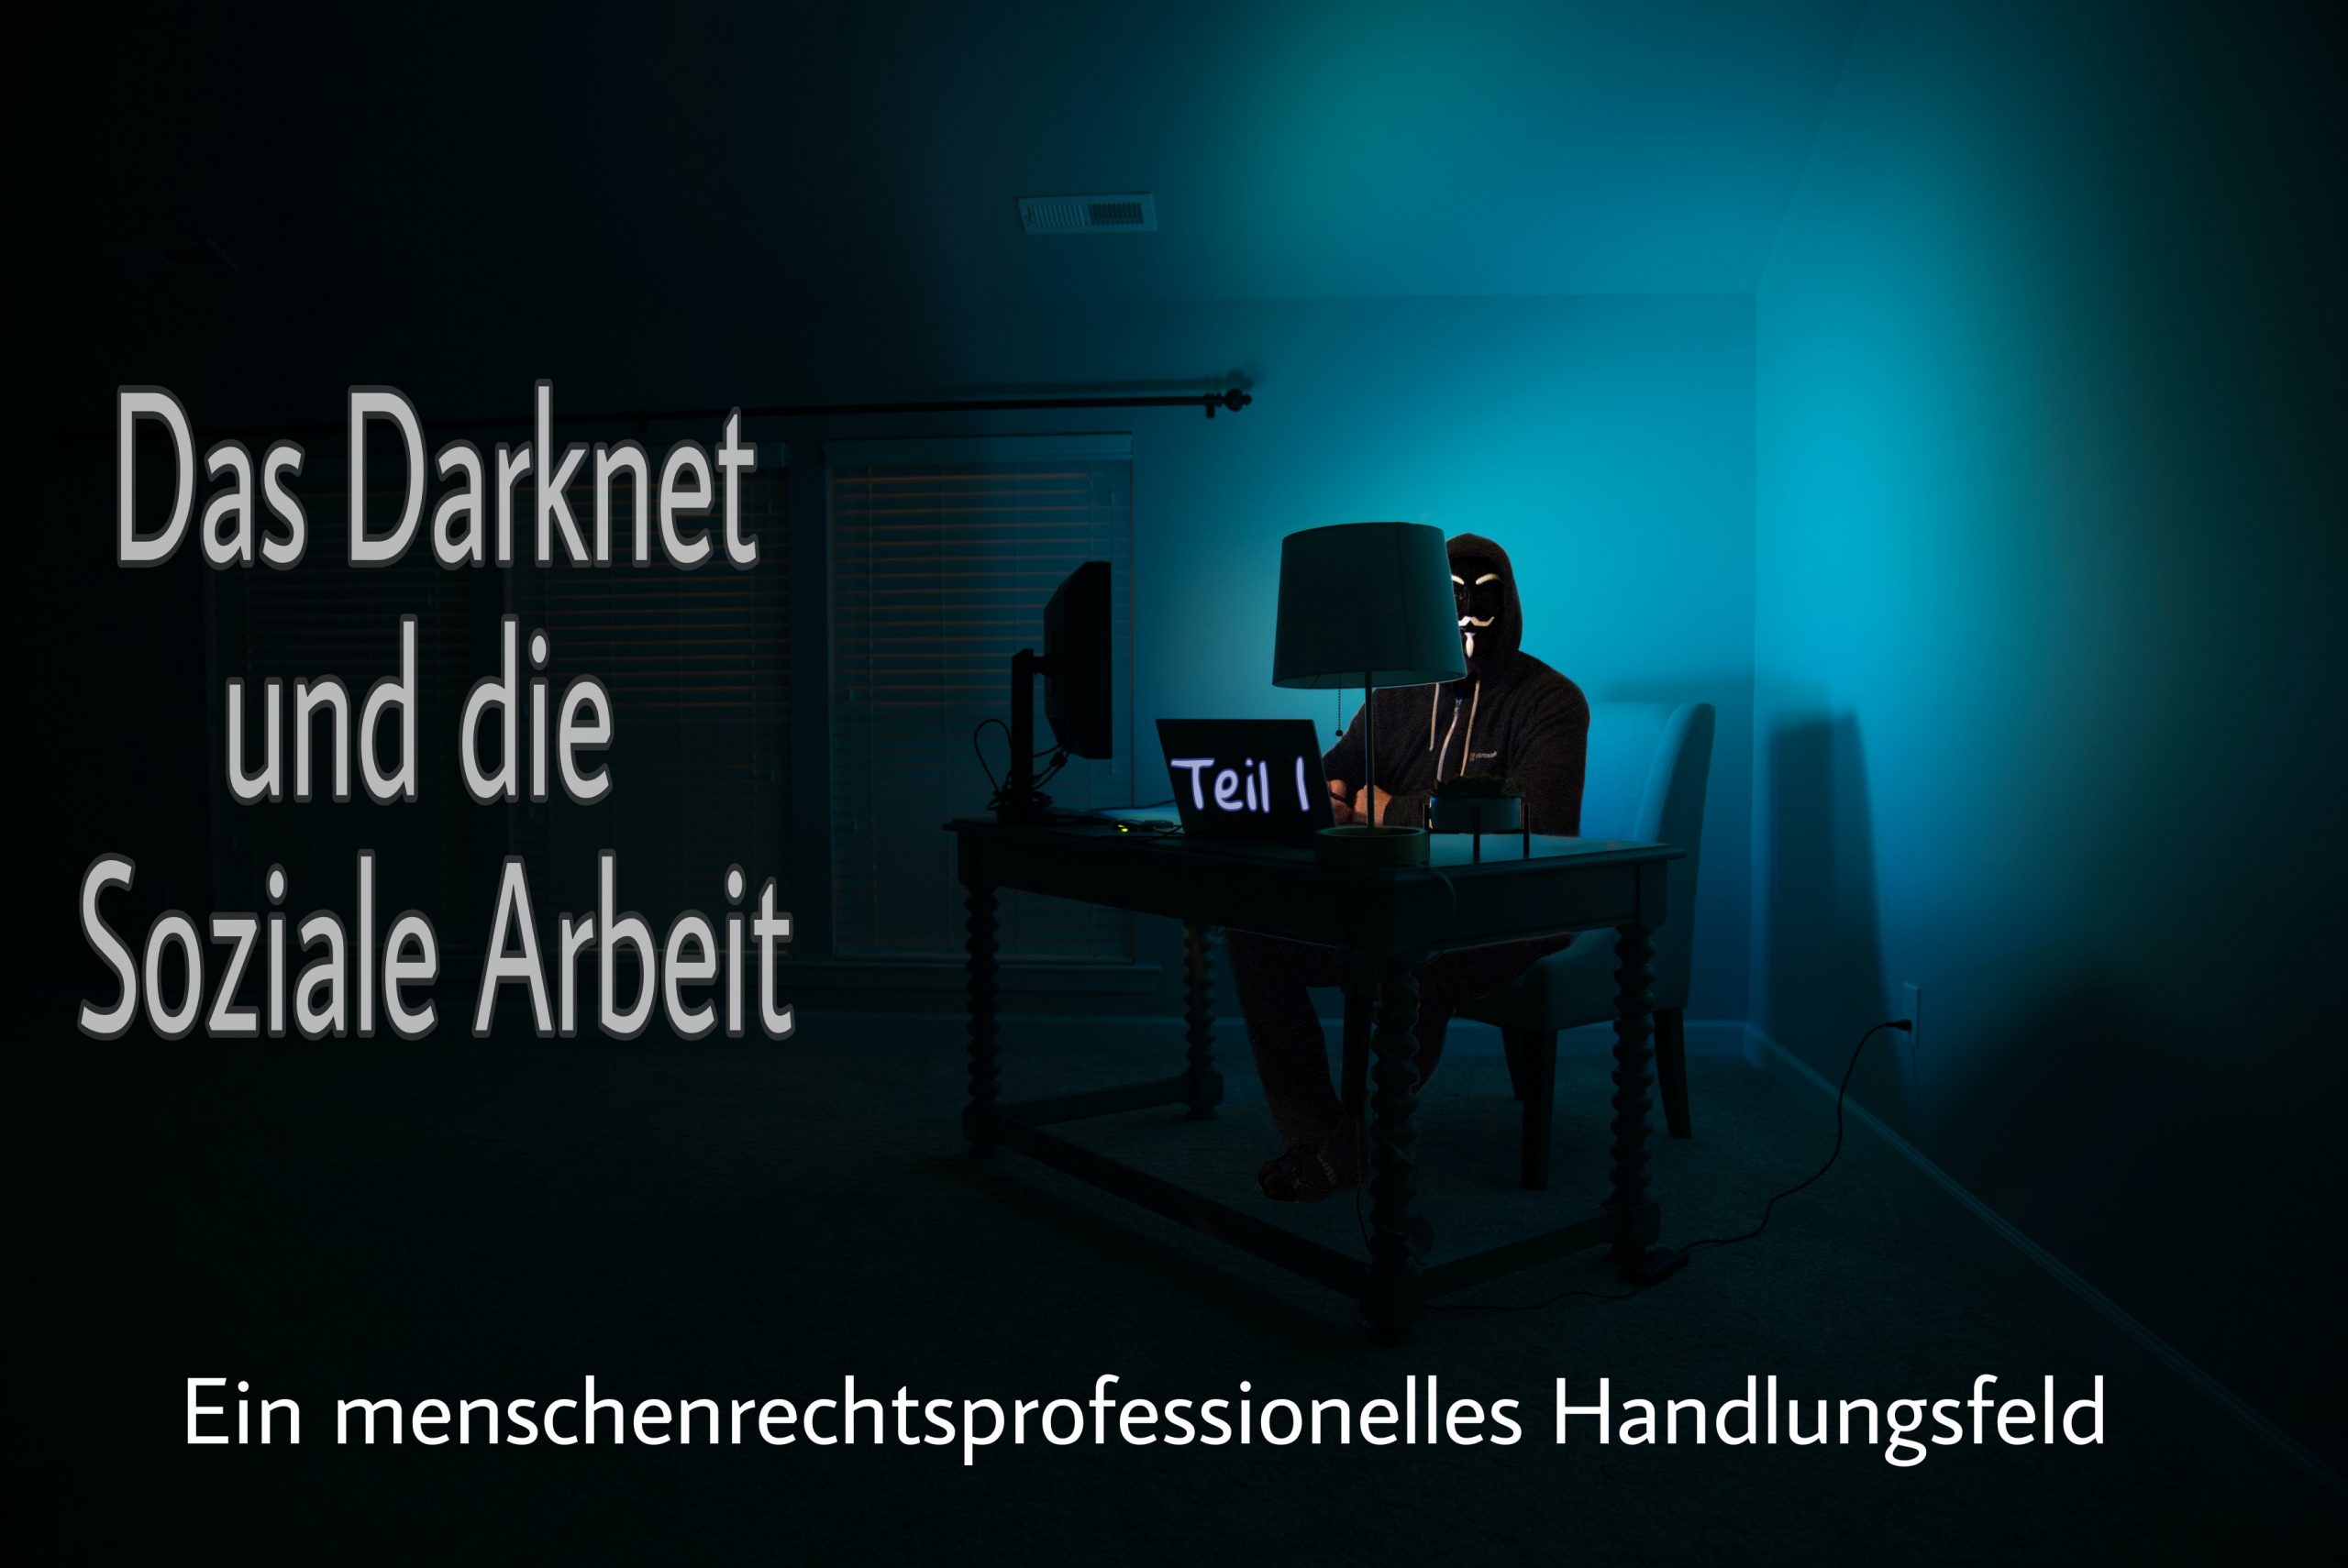 You are currently viewing Das Darknet als menschenrechtsprofessionelles Handlungsfeld / Teil 1